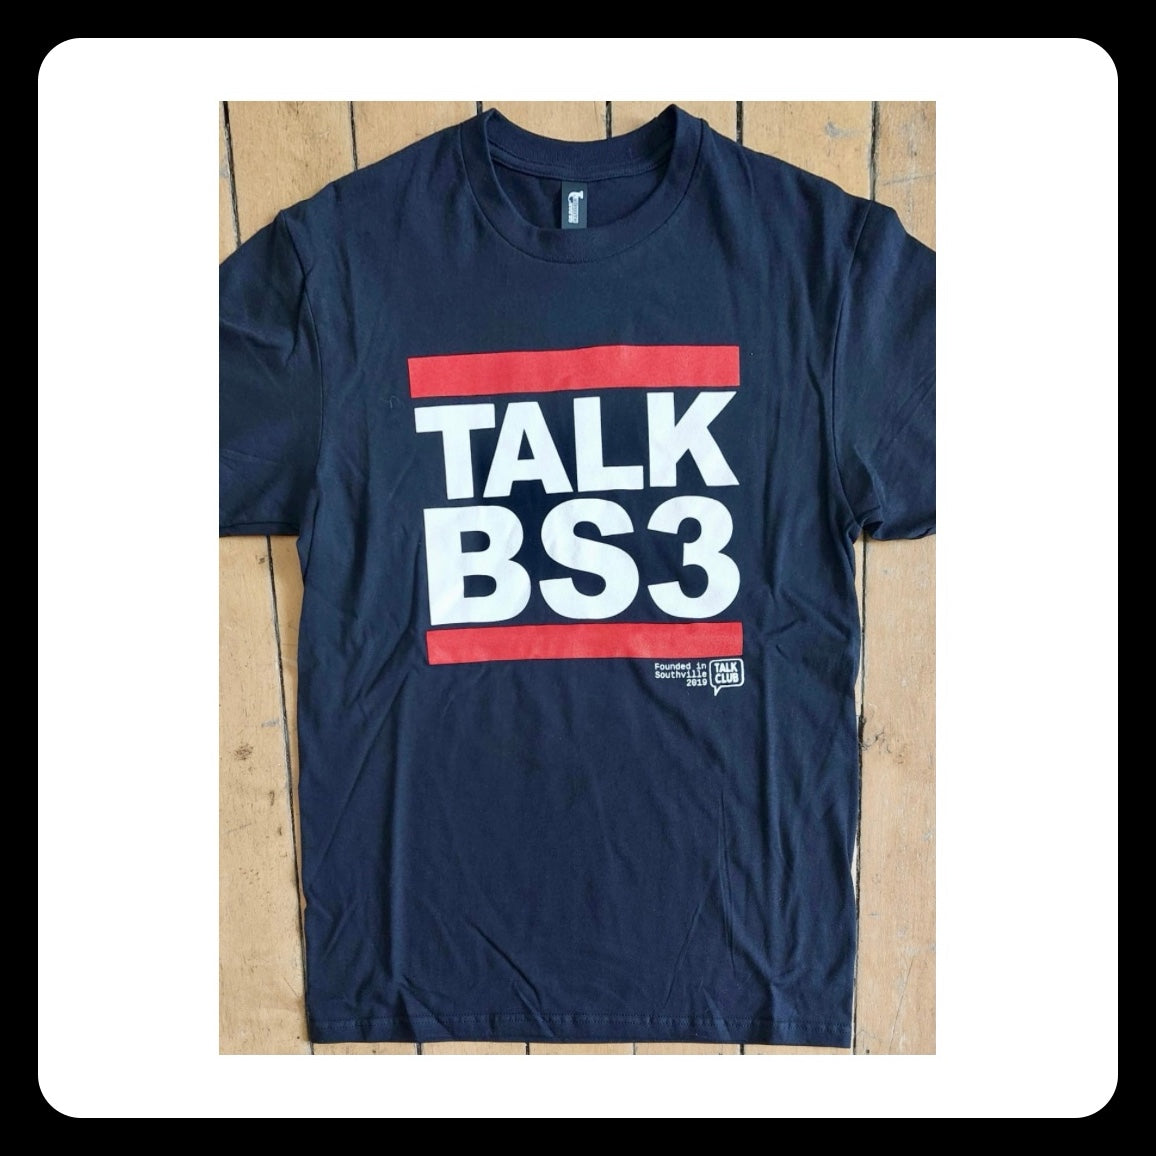 "TALK BS3" Talk Club Limited Edition Tee